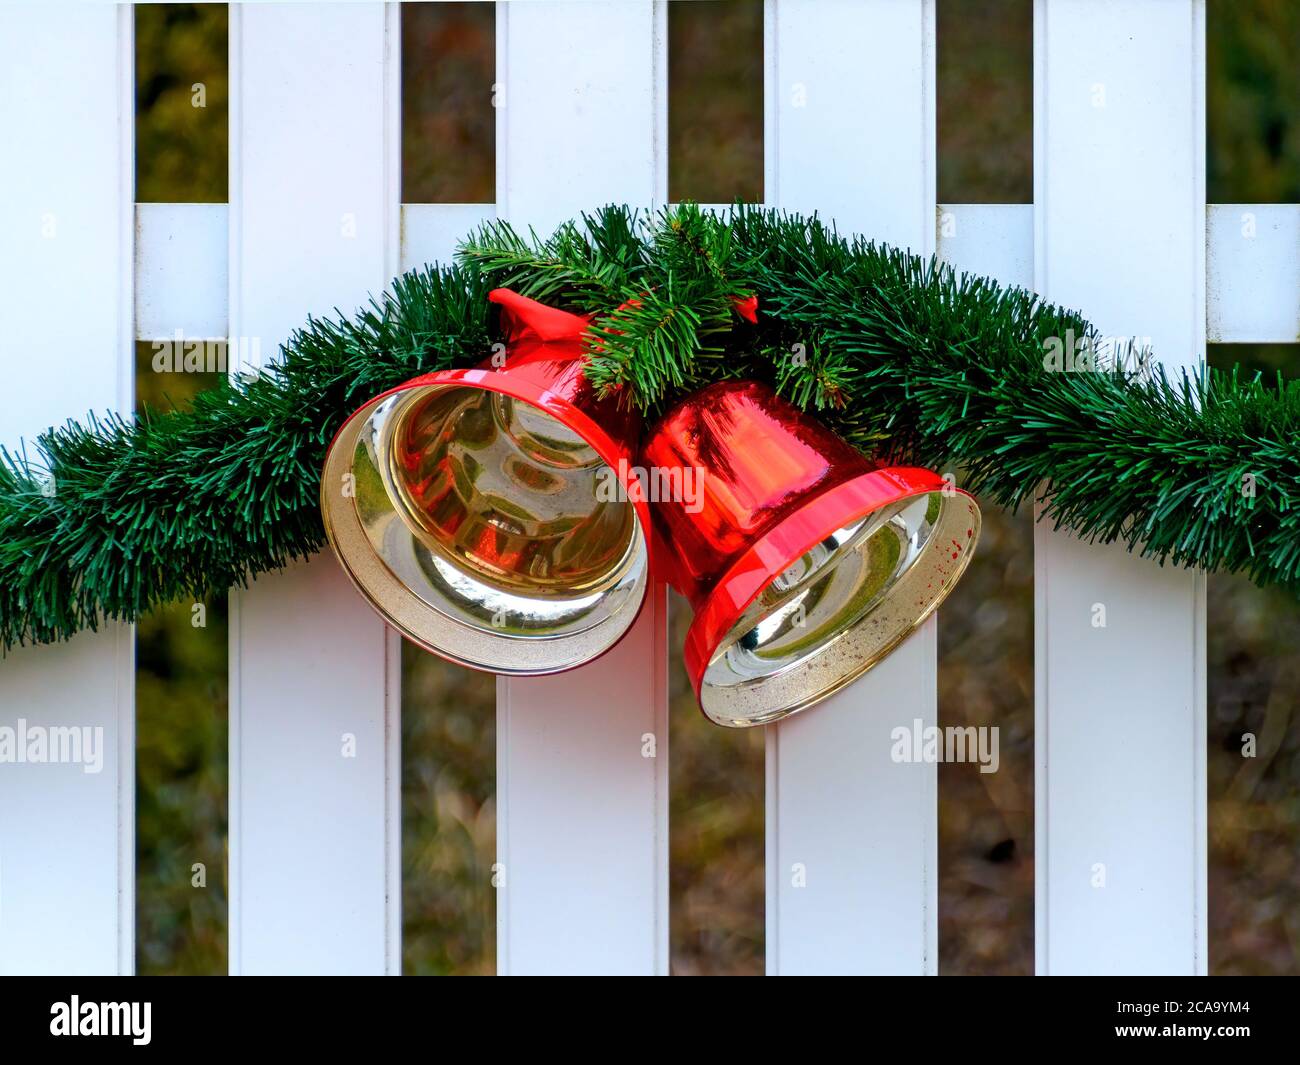 Recinzione bianca con decorazione natalizia realizzata da una ghirlanda verde e due campane lucide metalliche rosse Foto Stock